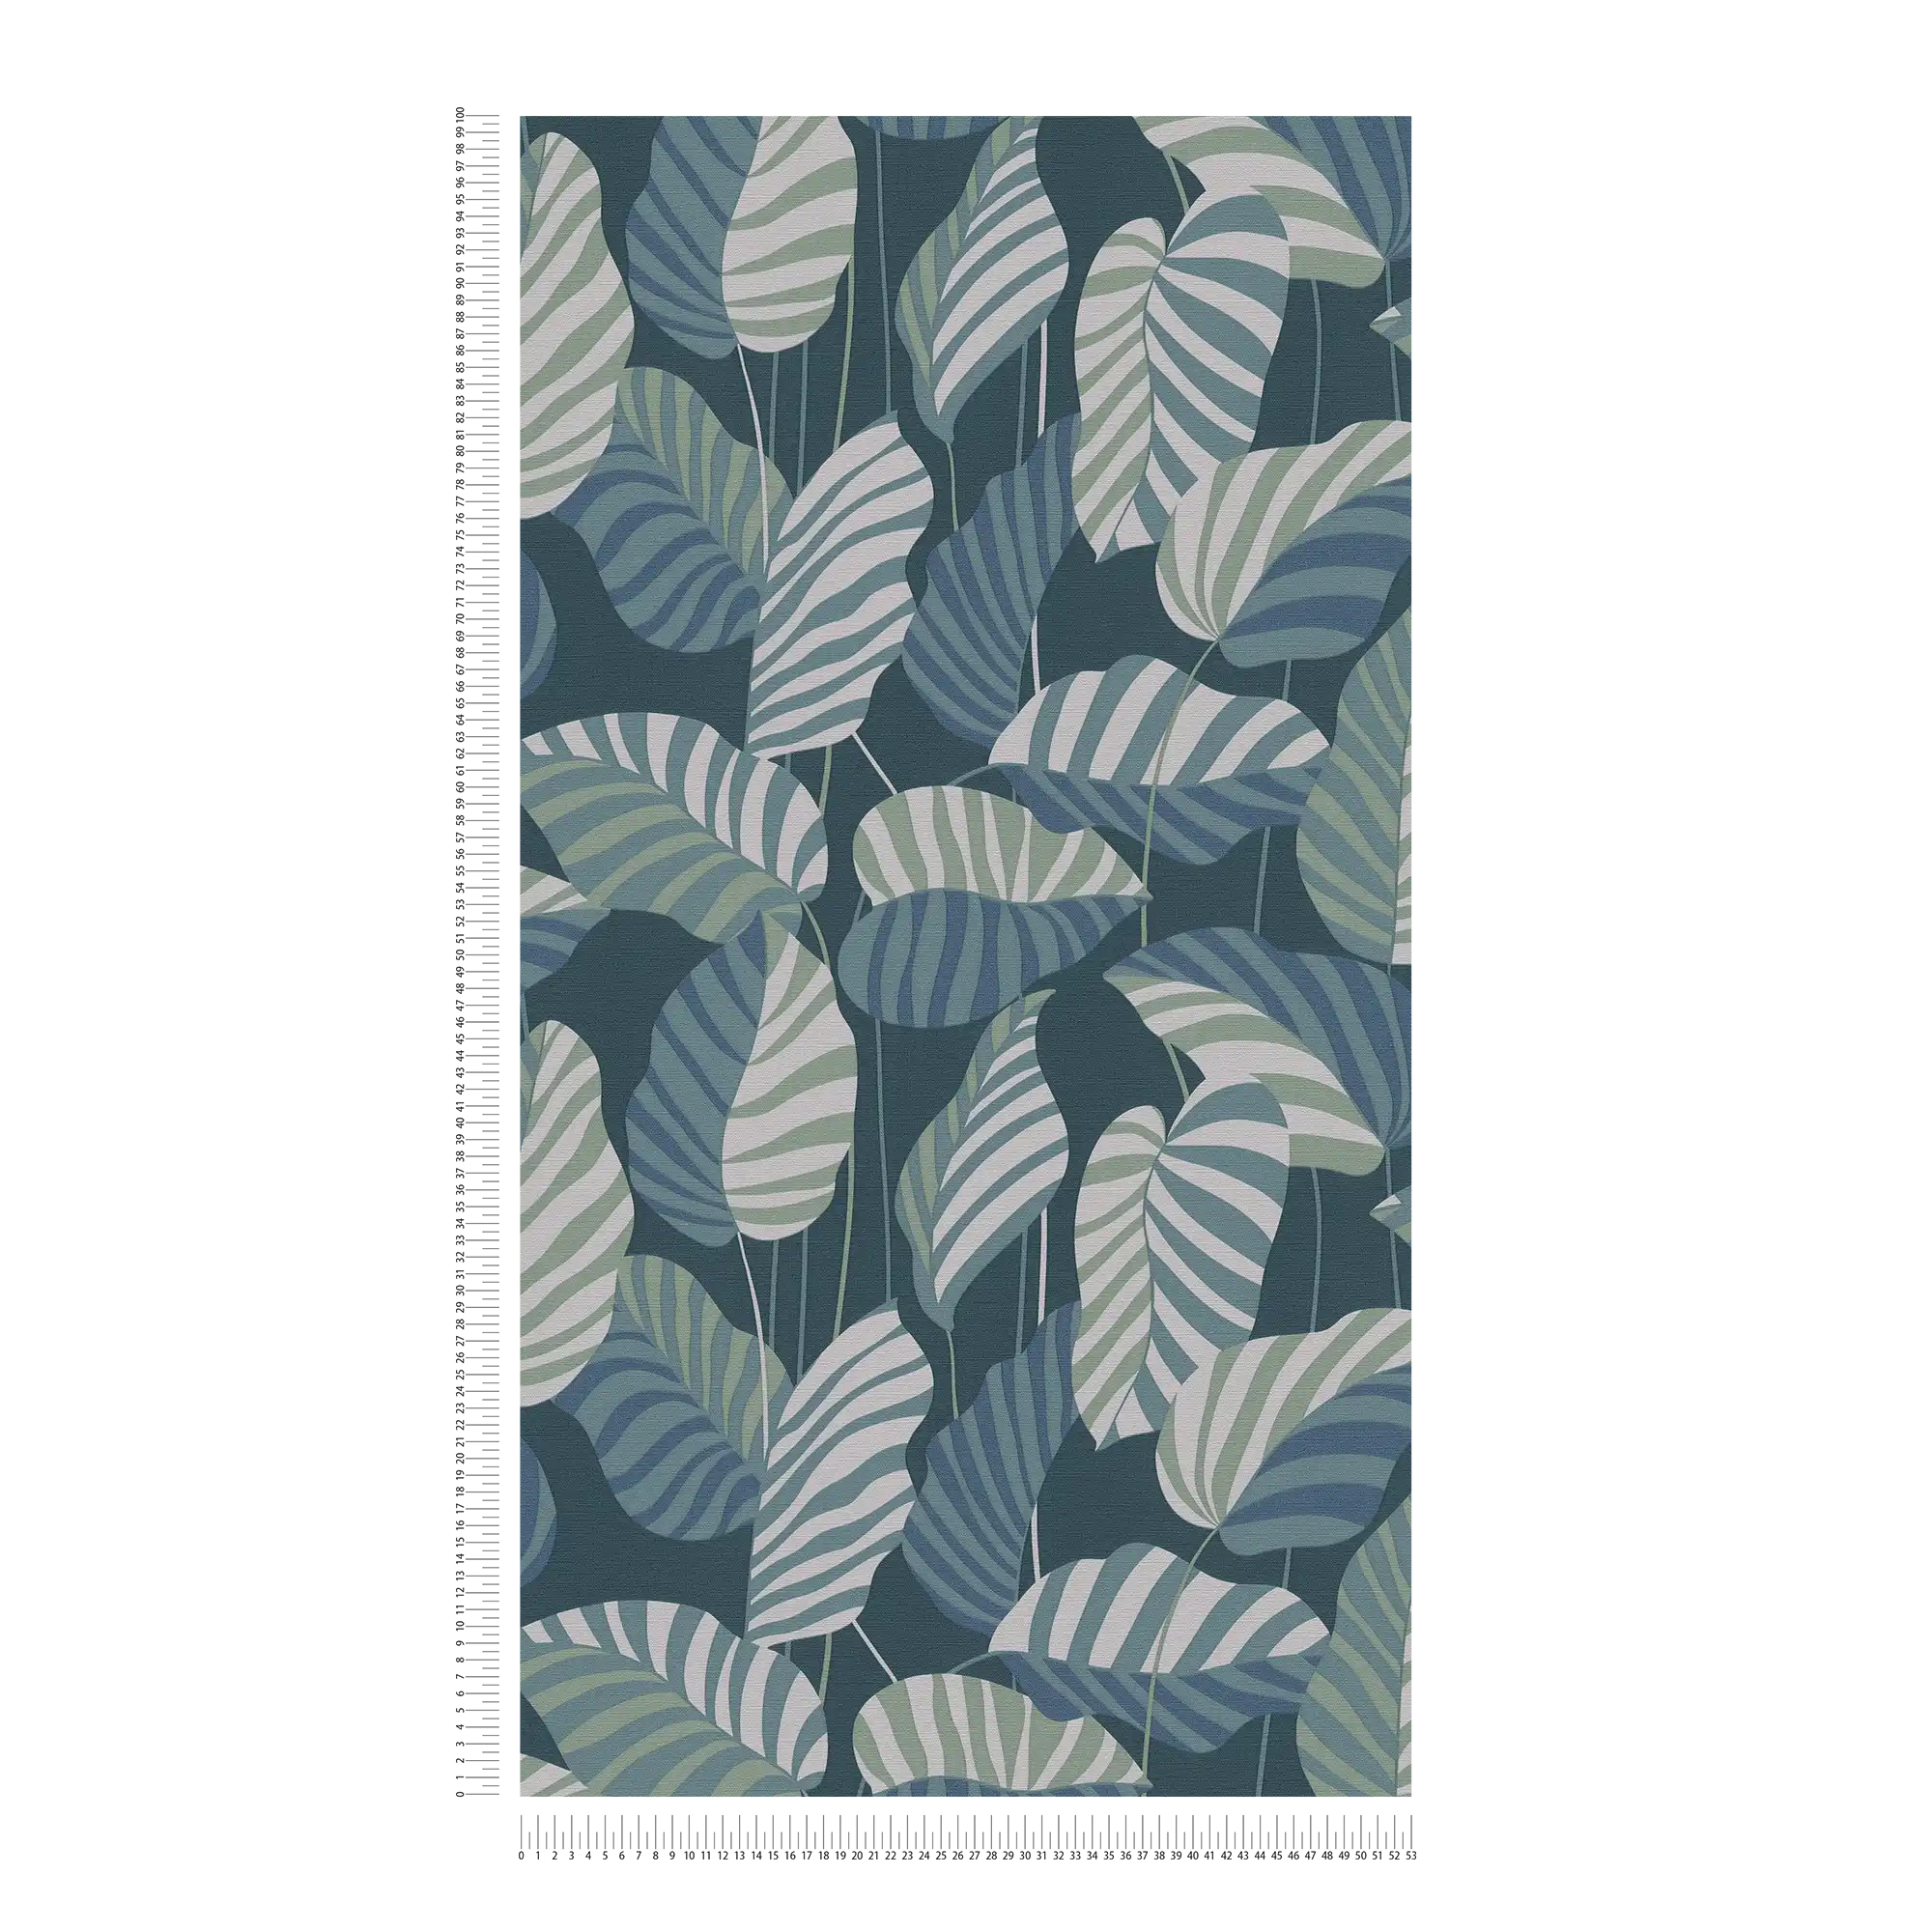             Papier peint intissé style jungle avec des feuilles - bleu, vert, blanc
        